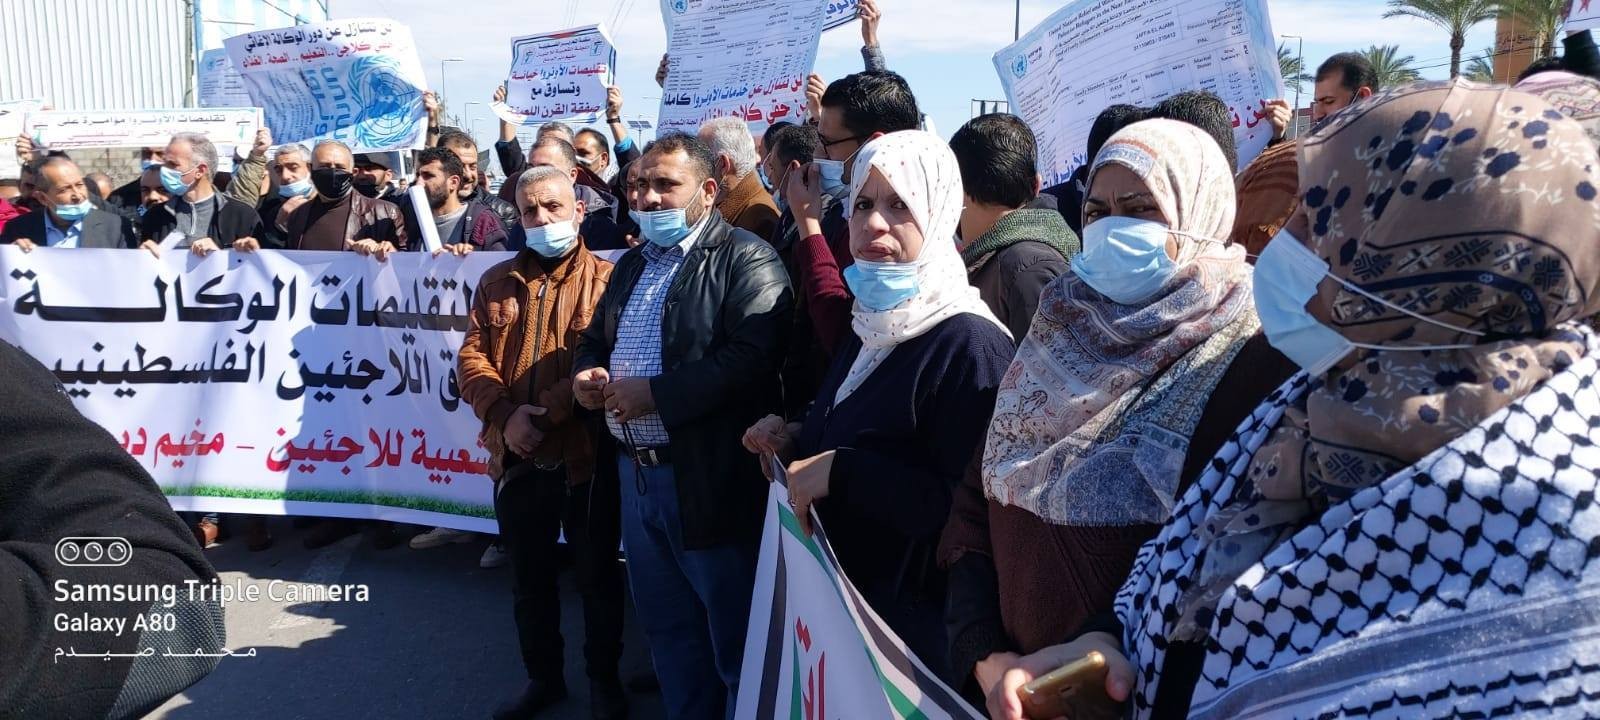 تنظيم اعتصامات متزامنة أمام مقرات تموين "أونروا" في مخيمات قطاع غزة